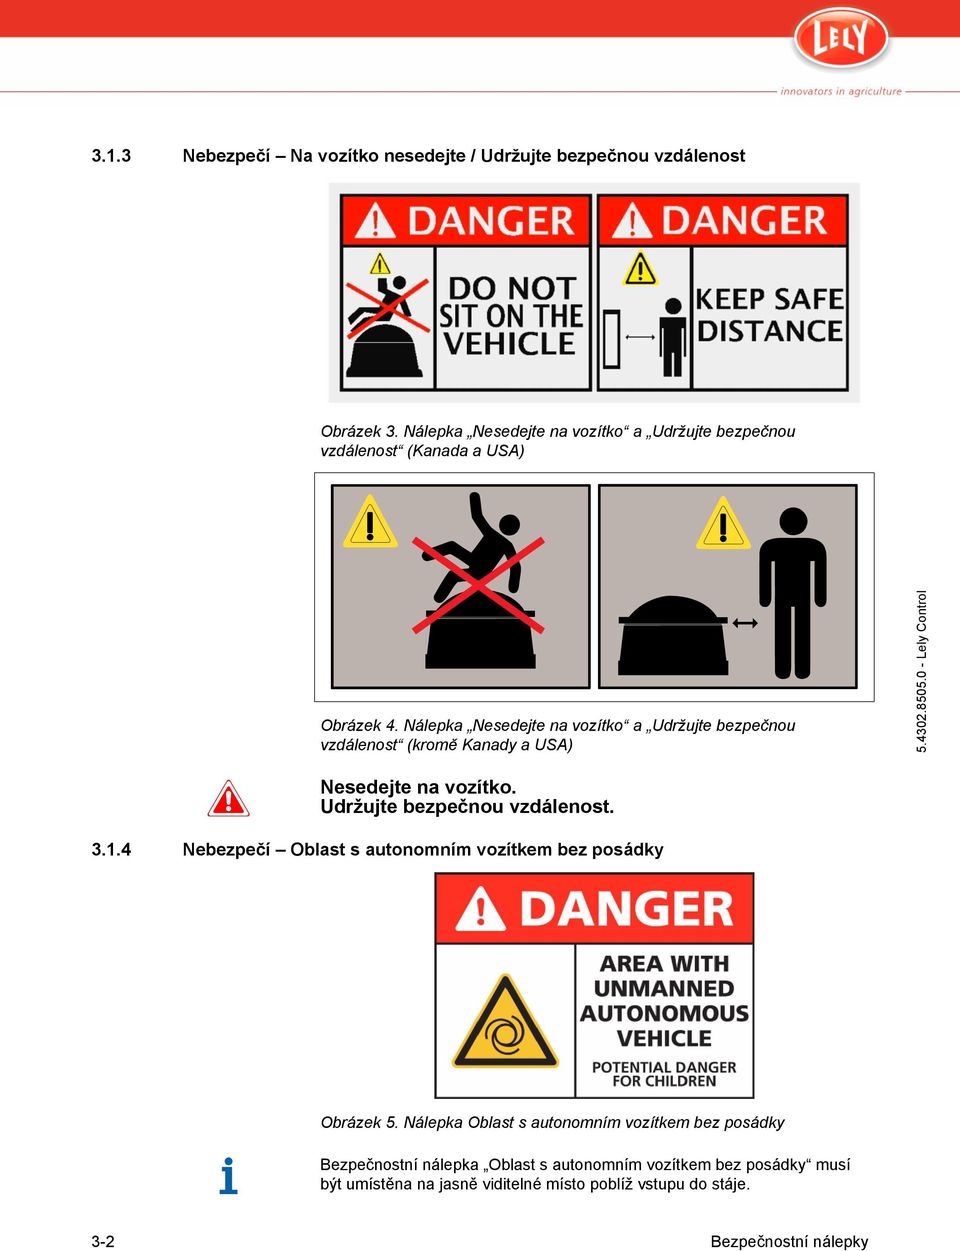 Nálepka Nesedejte na vozítko a Udržujte bezpečnou vzdálenost (kromě Kanady a USA) Nesedejte na vozítko. Udržujte bezpečnou vzdálenost. 3.1.